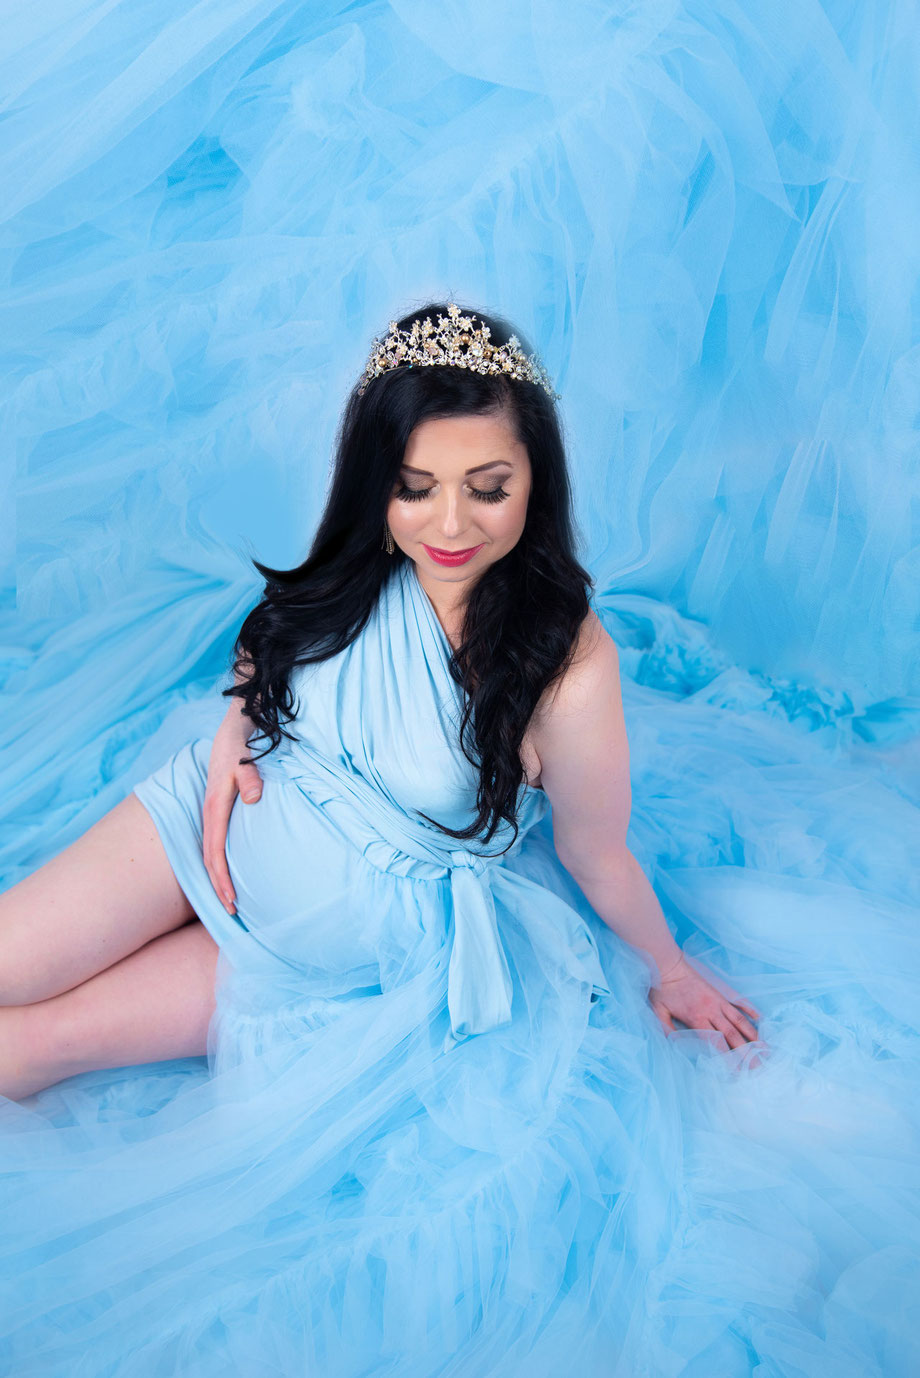 zwangere vrouw in blauwe jurk